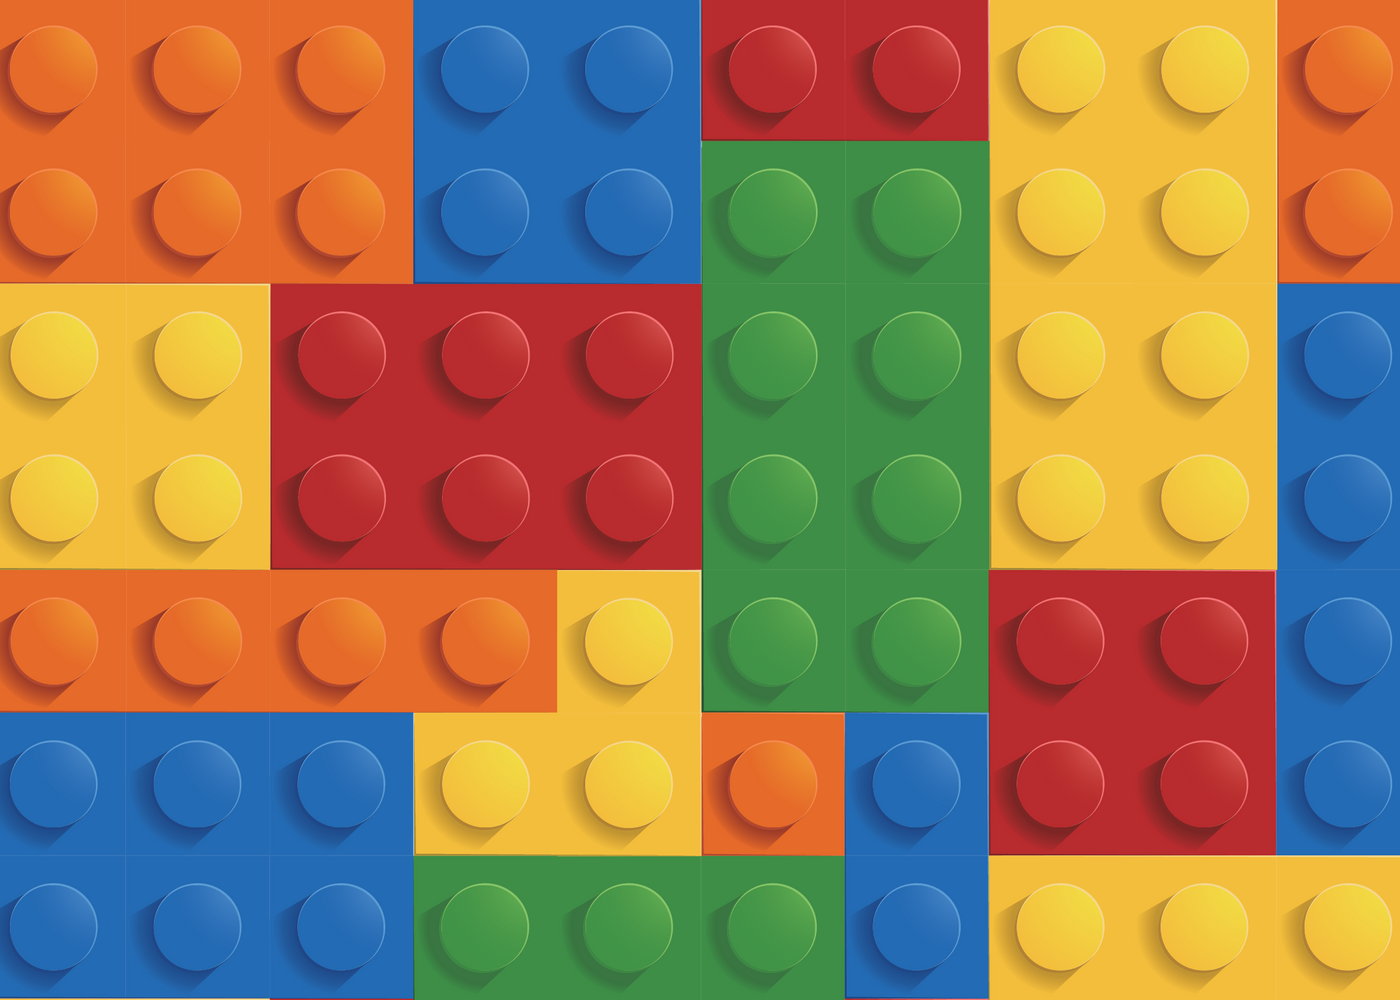 Lego -Shindig Party Box